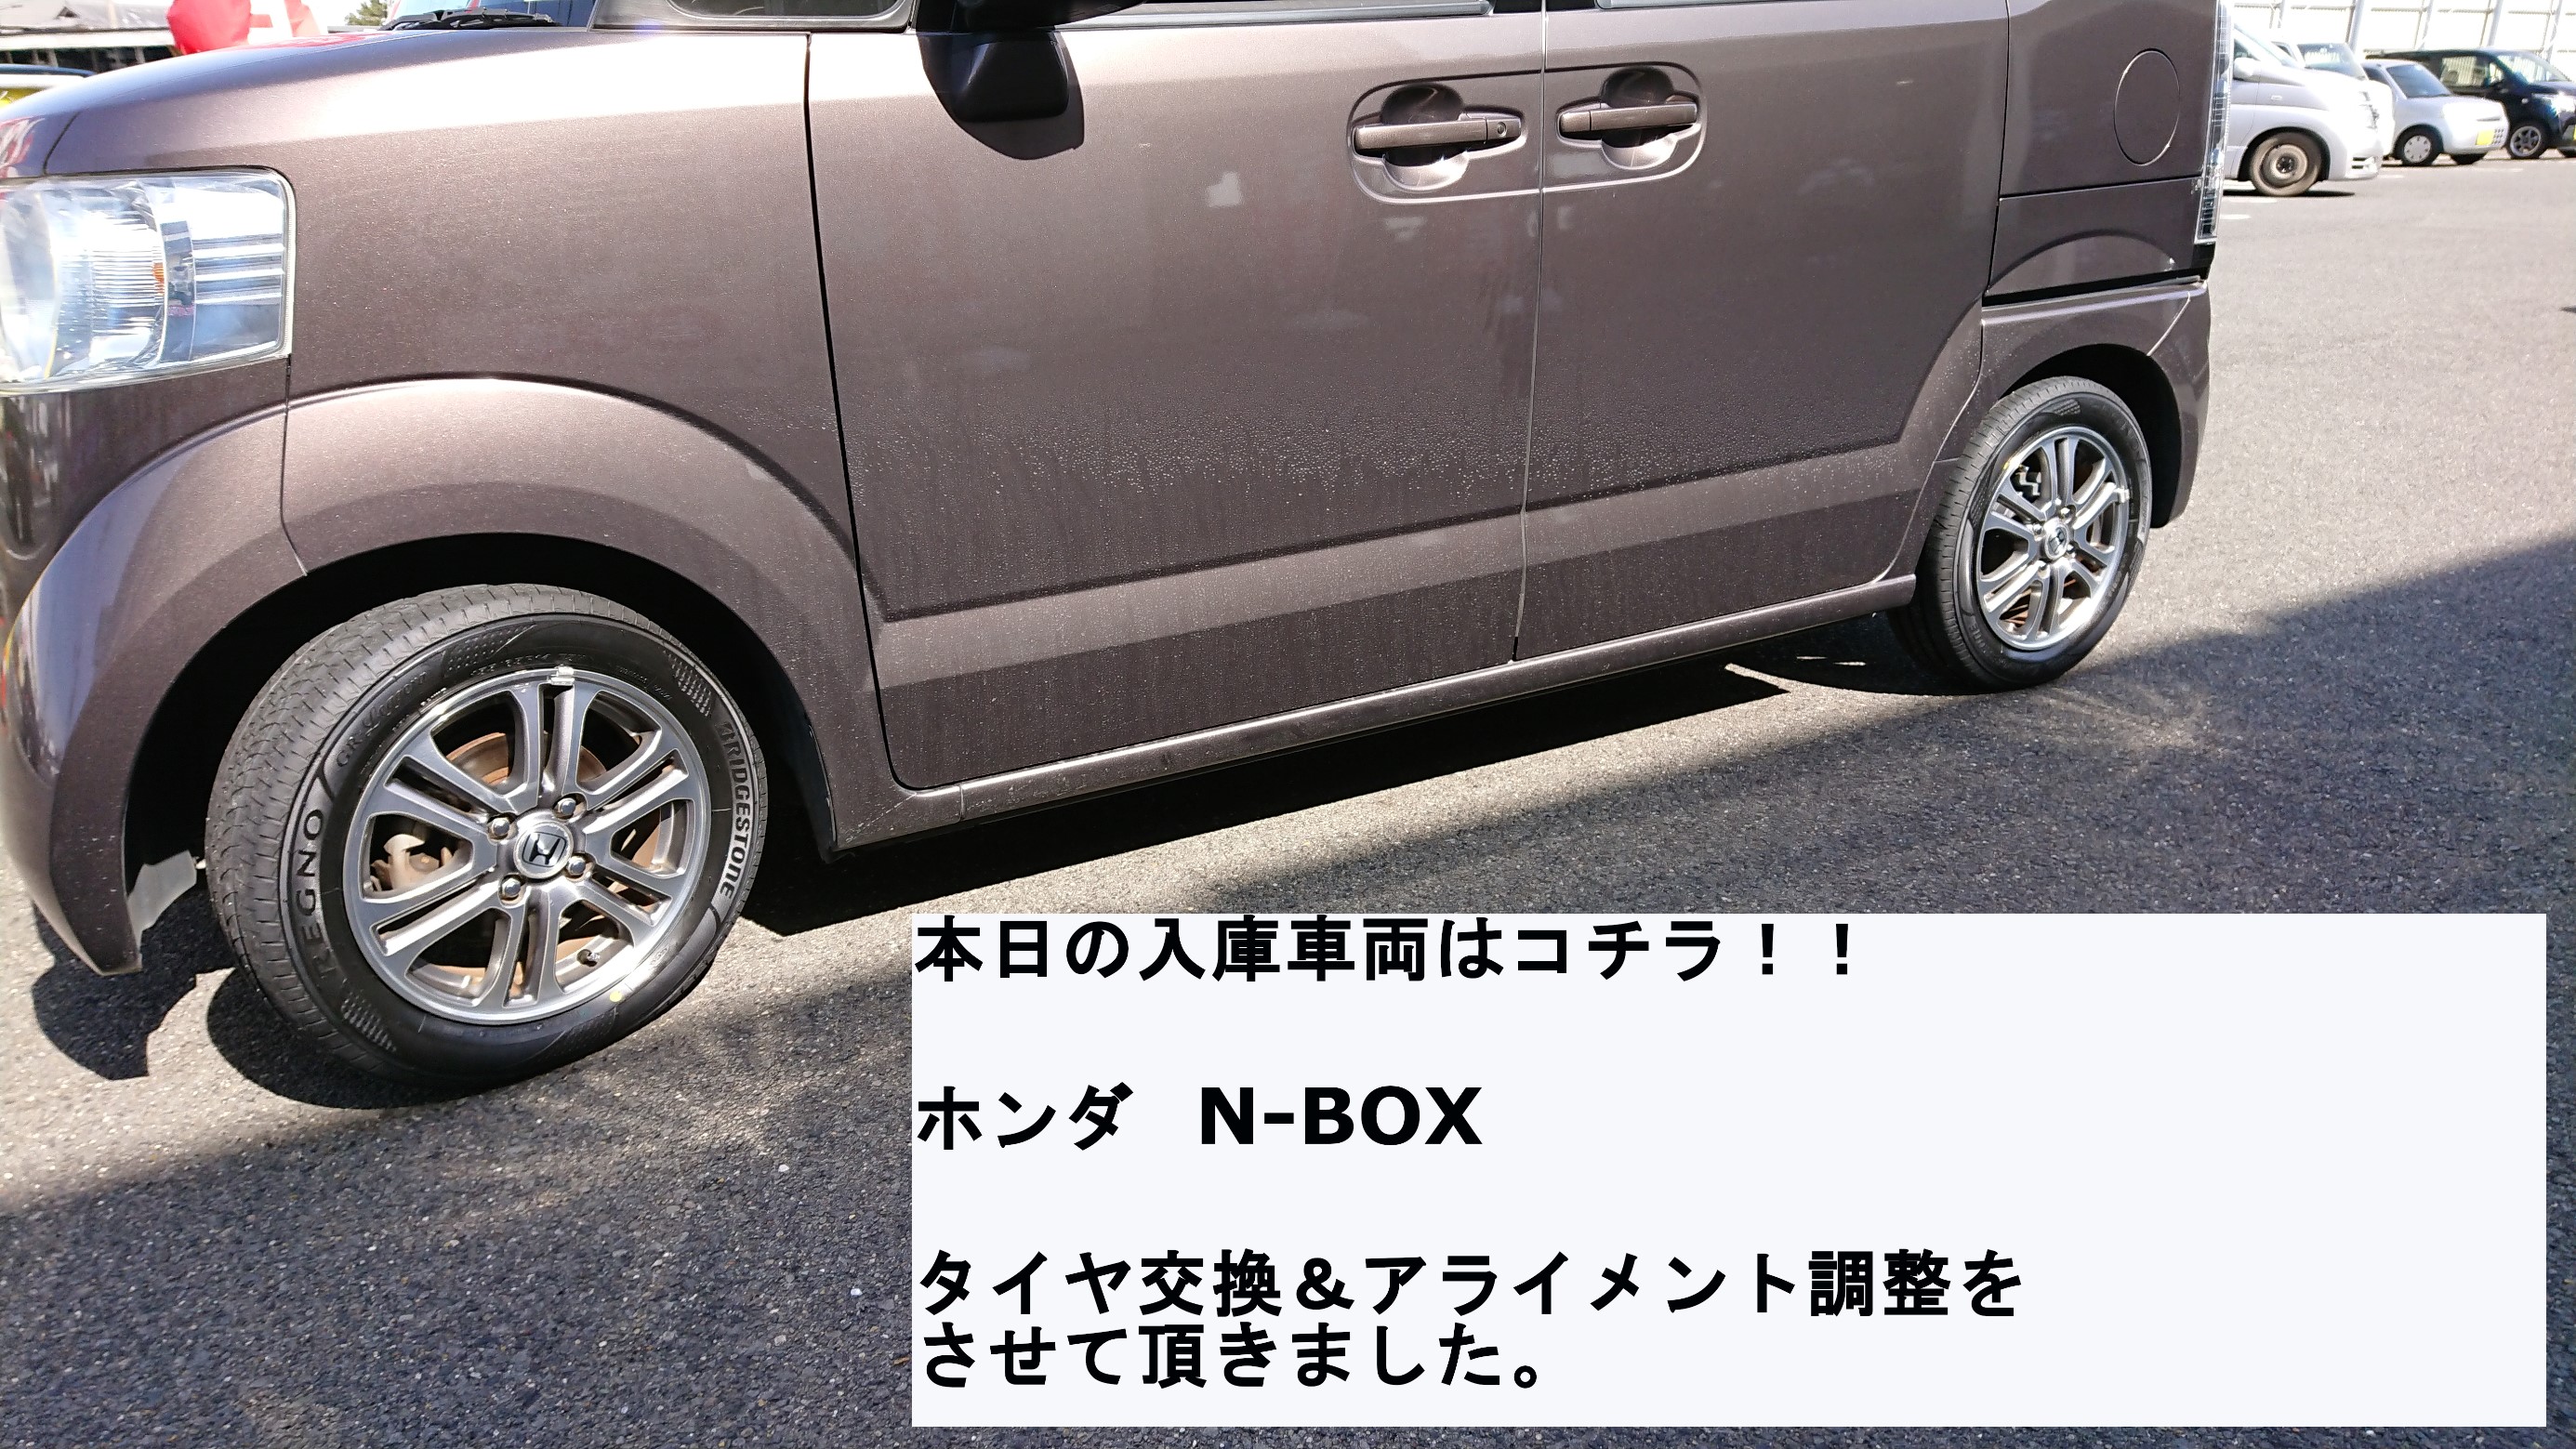 ホンダ N-BOX 155/65R14 レグノ GR-レジェーラ タイヤ交換 ...